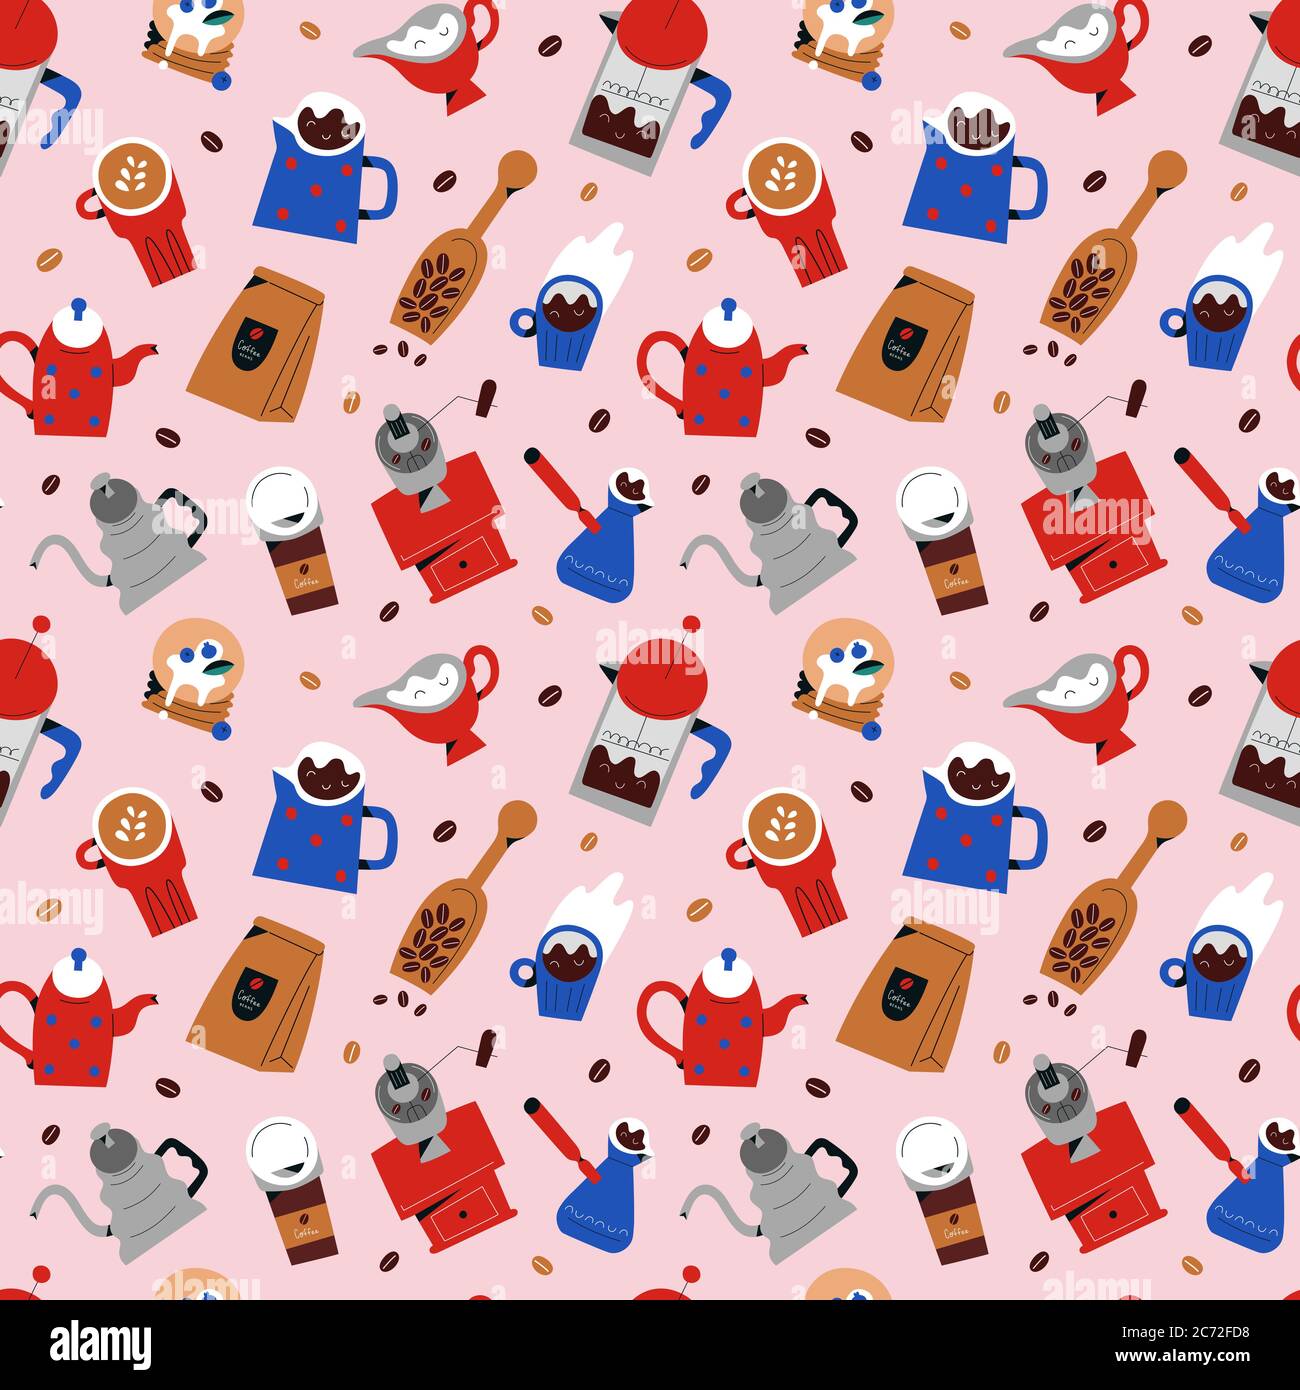 Kaffee nahtlose Muster, Vektor-Ornament mit bunten Doodle illustratios von Coffee-Shop Getränke, Werkzeuge und Utensilien, dekorative Hand gezeichnet Hintergrund Stock Vektor